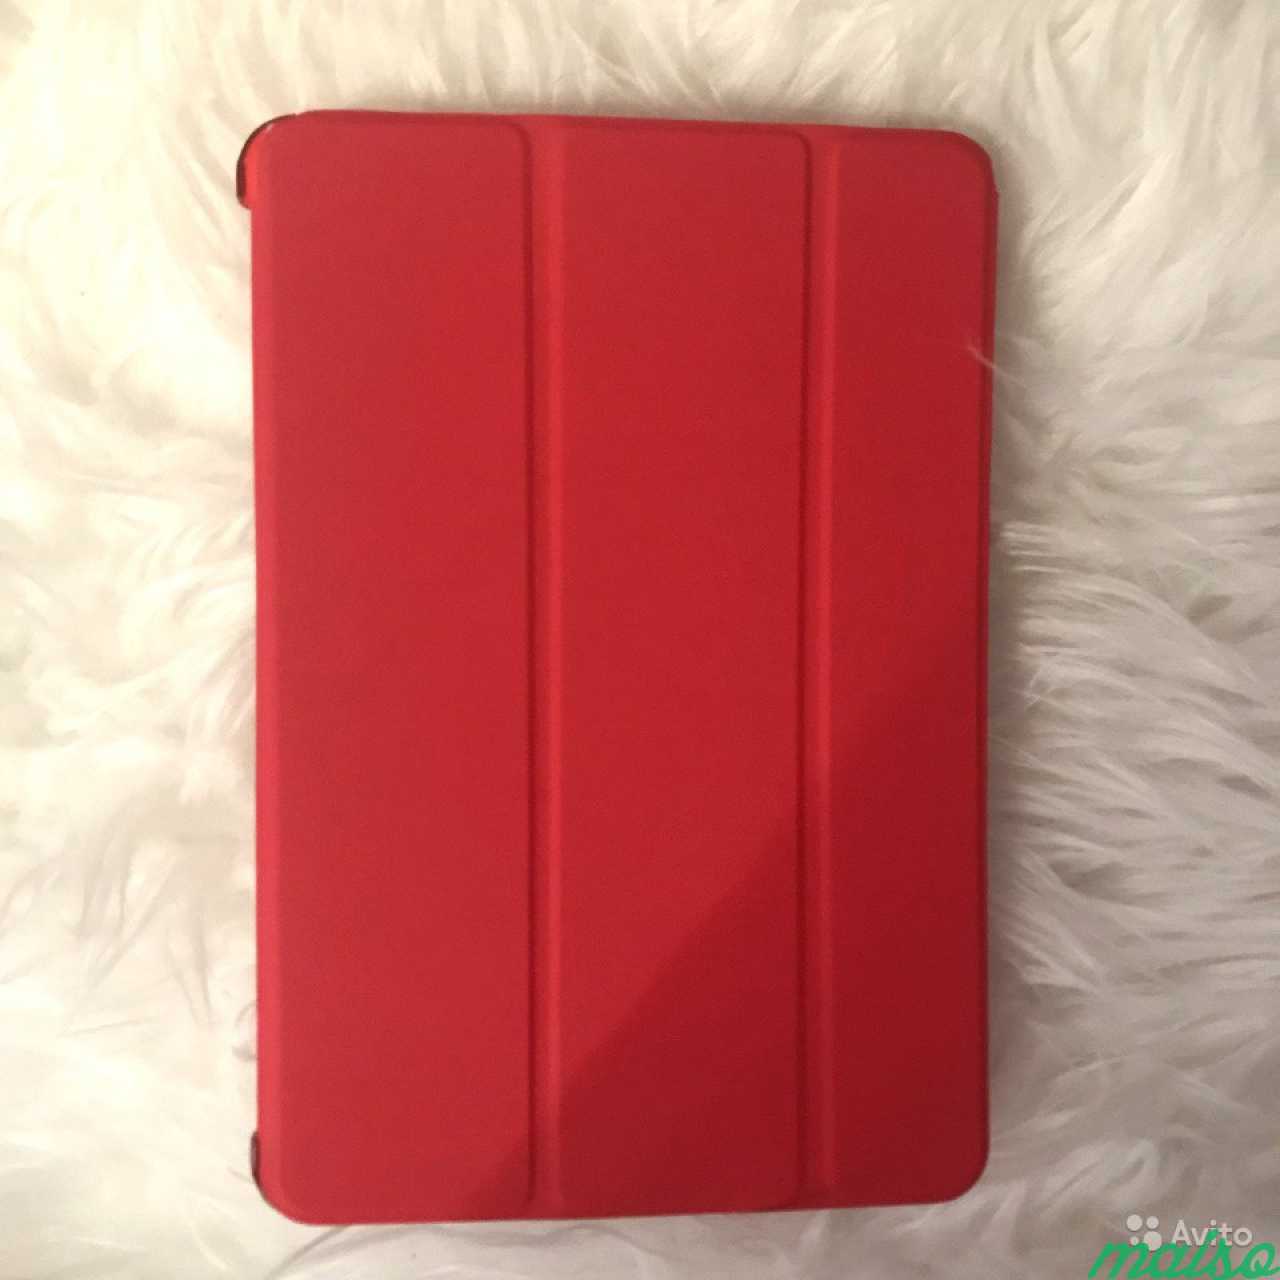 Новый чехол-книжка iPad mini красный в Санкт-Петербурге. Фото 1